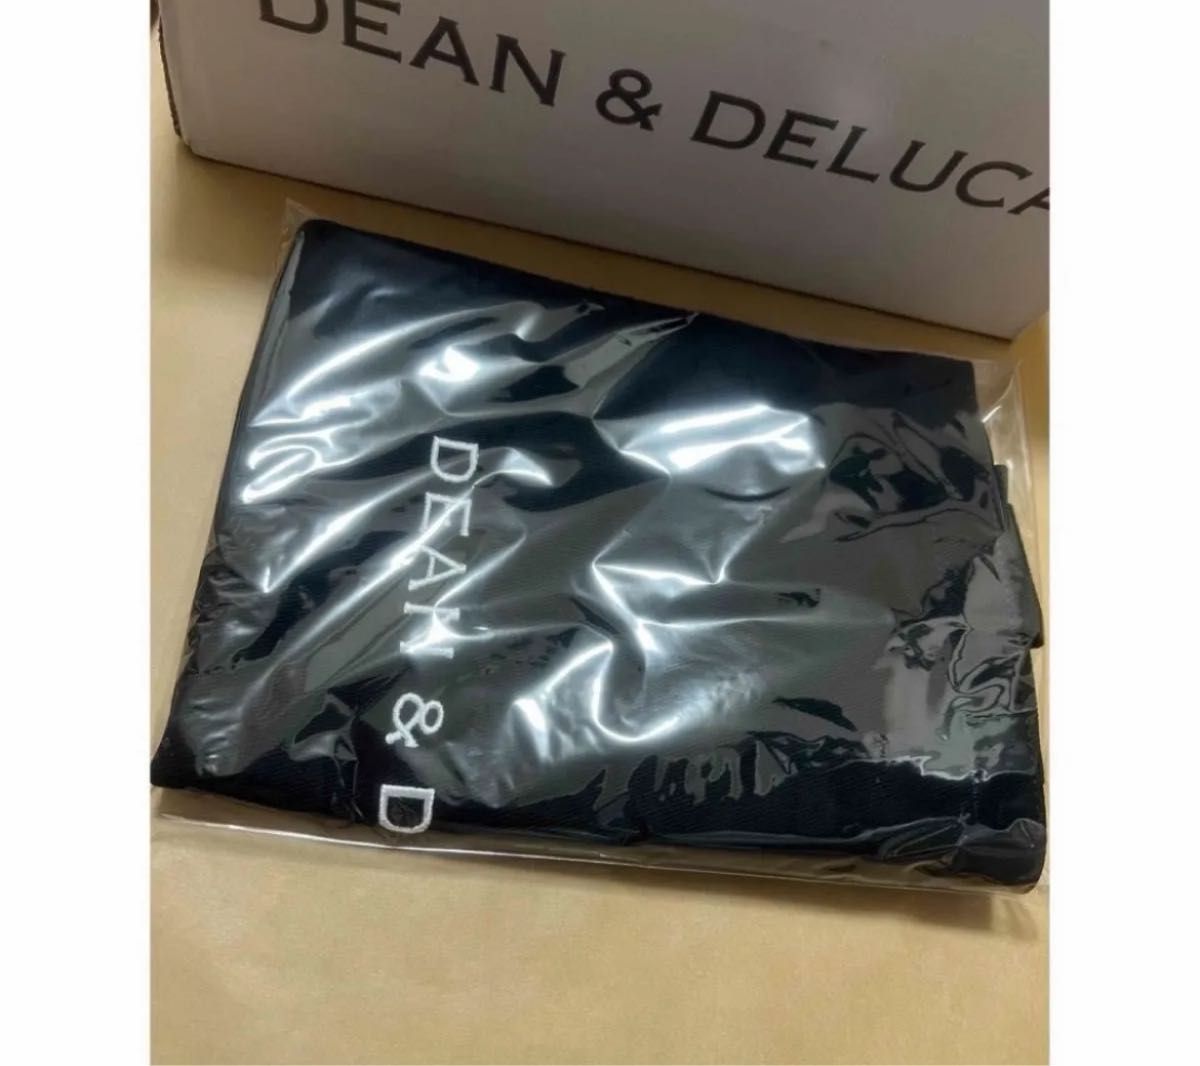 新品 限定デザイン完売品DEAN&DELUCA20周年コットンツイルトートバッグ